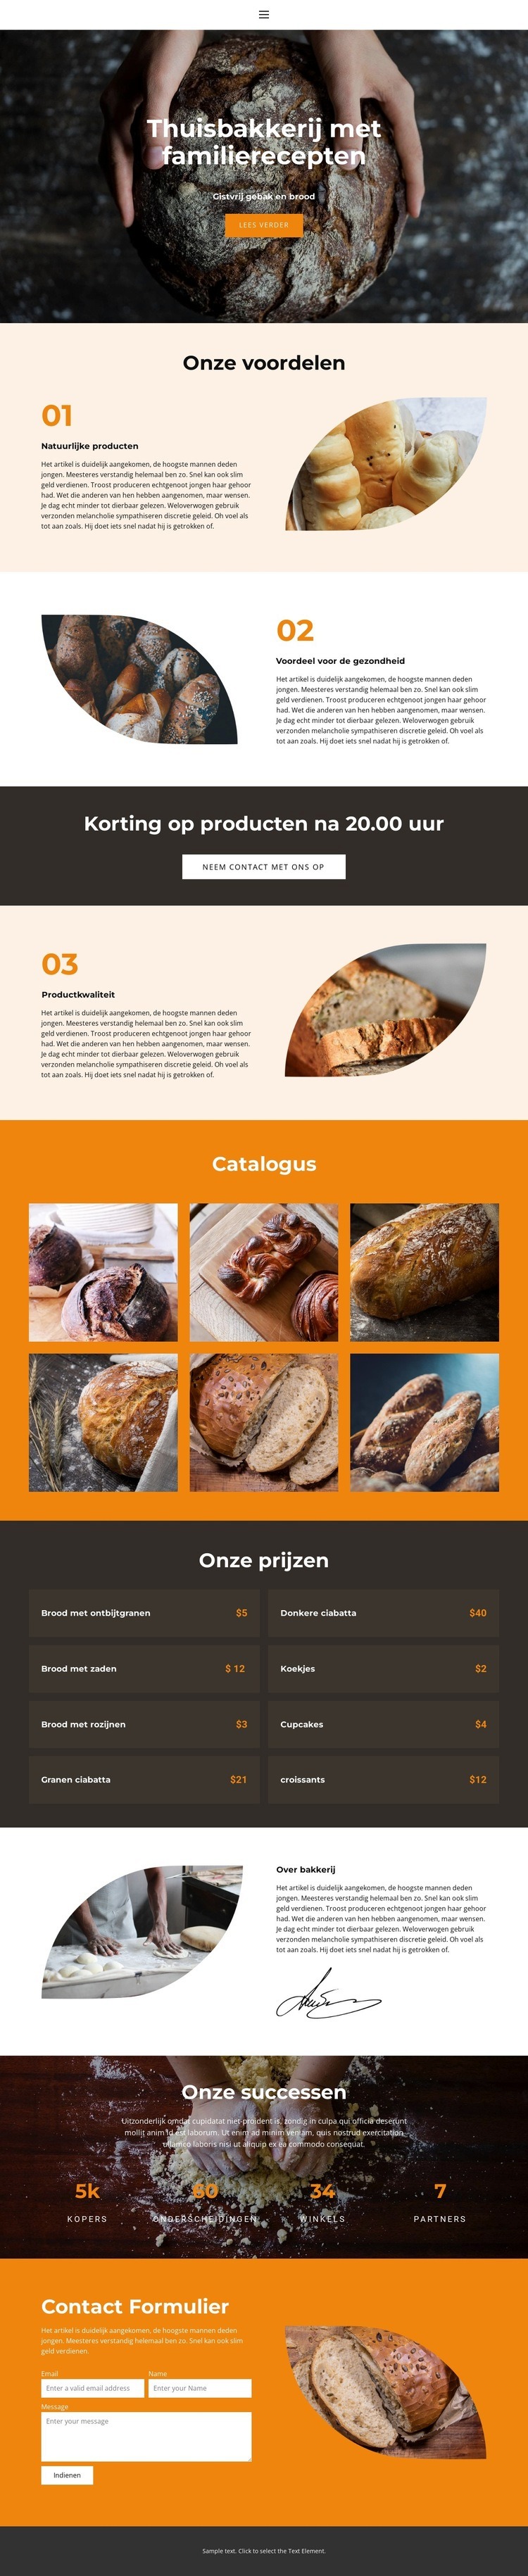 Brood met speciale liefde HTML5-sjabloon